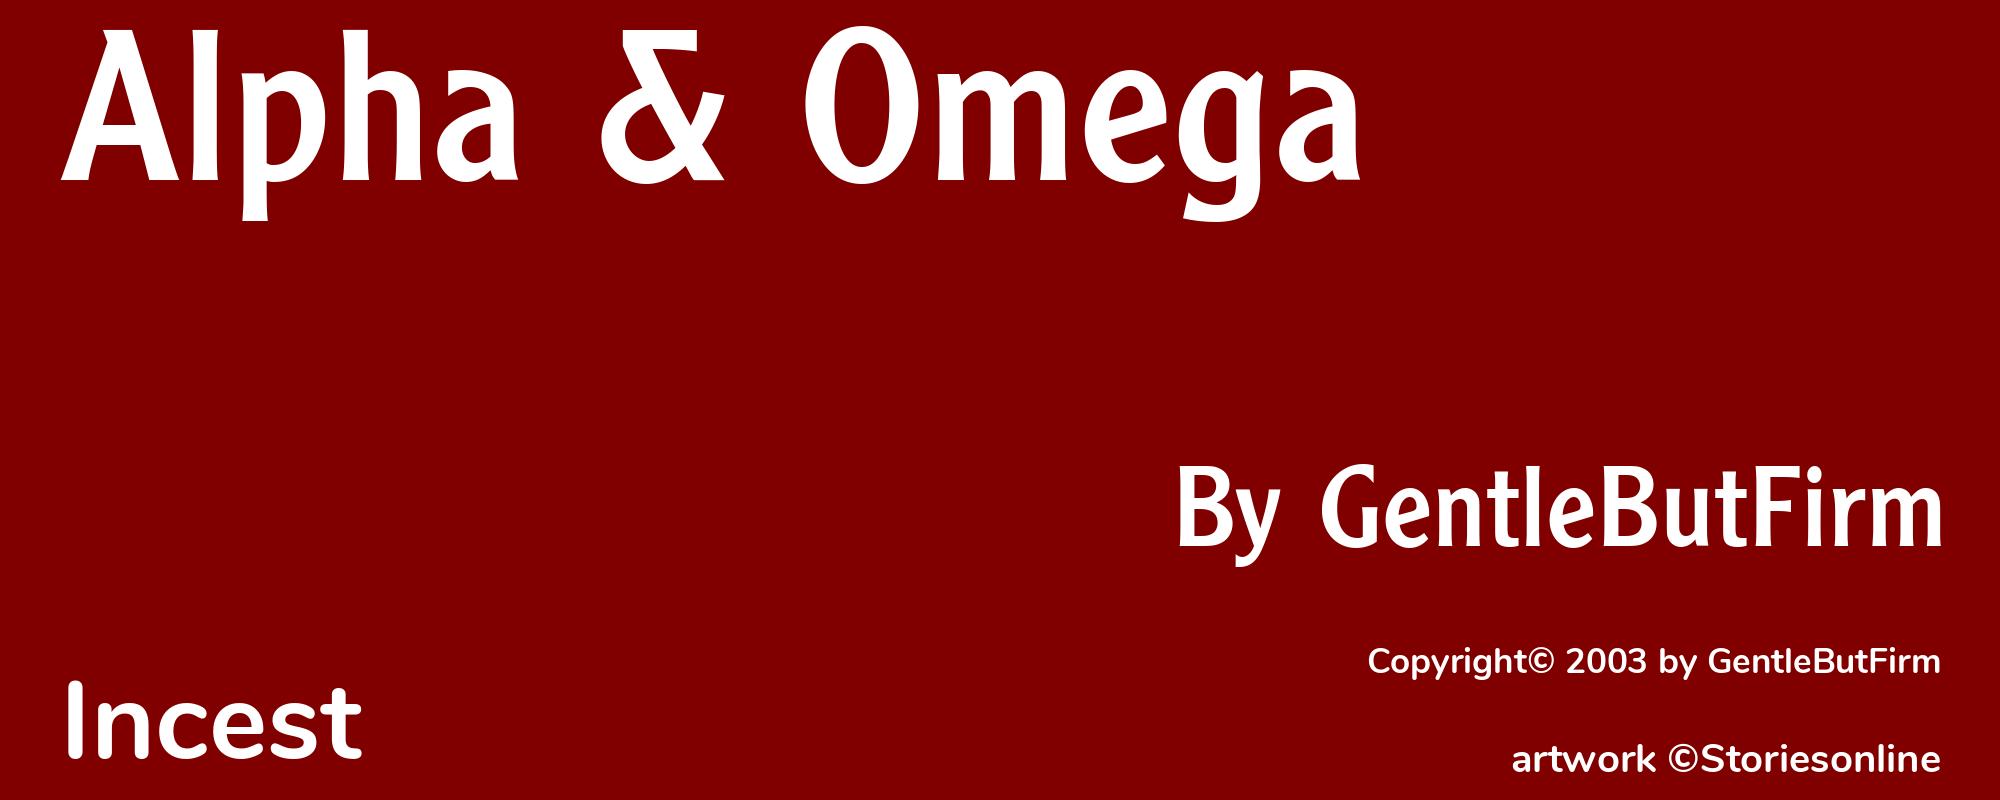 Alpha & Omega - Cover